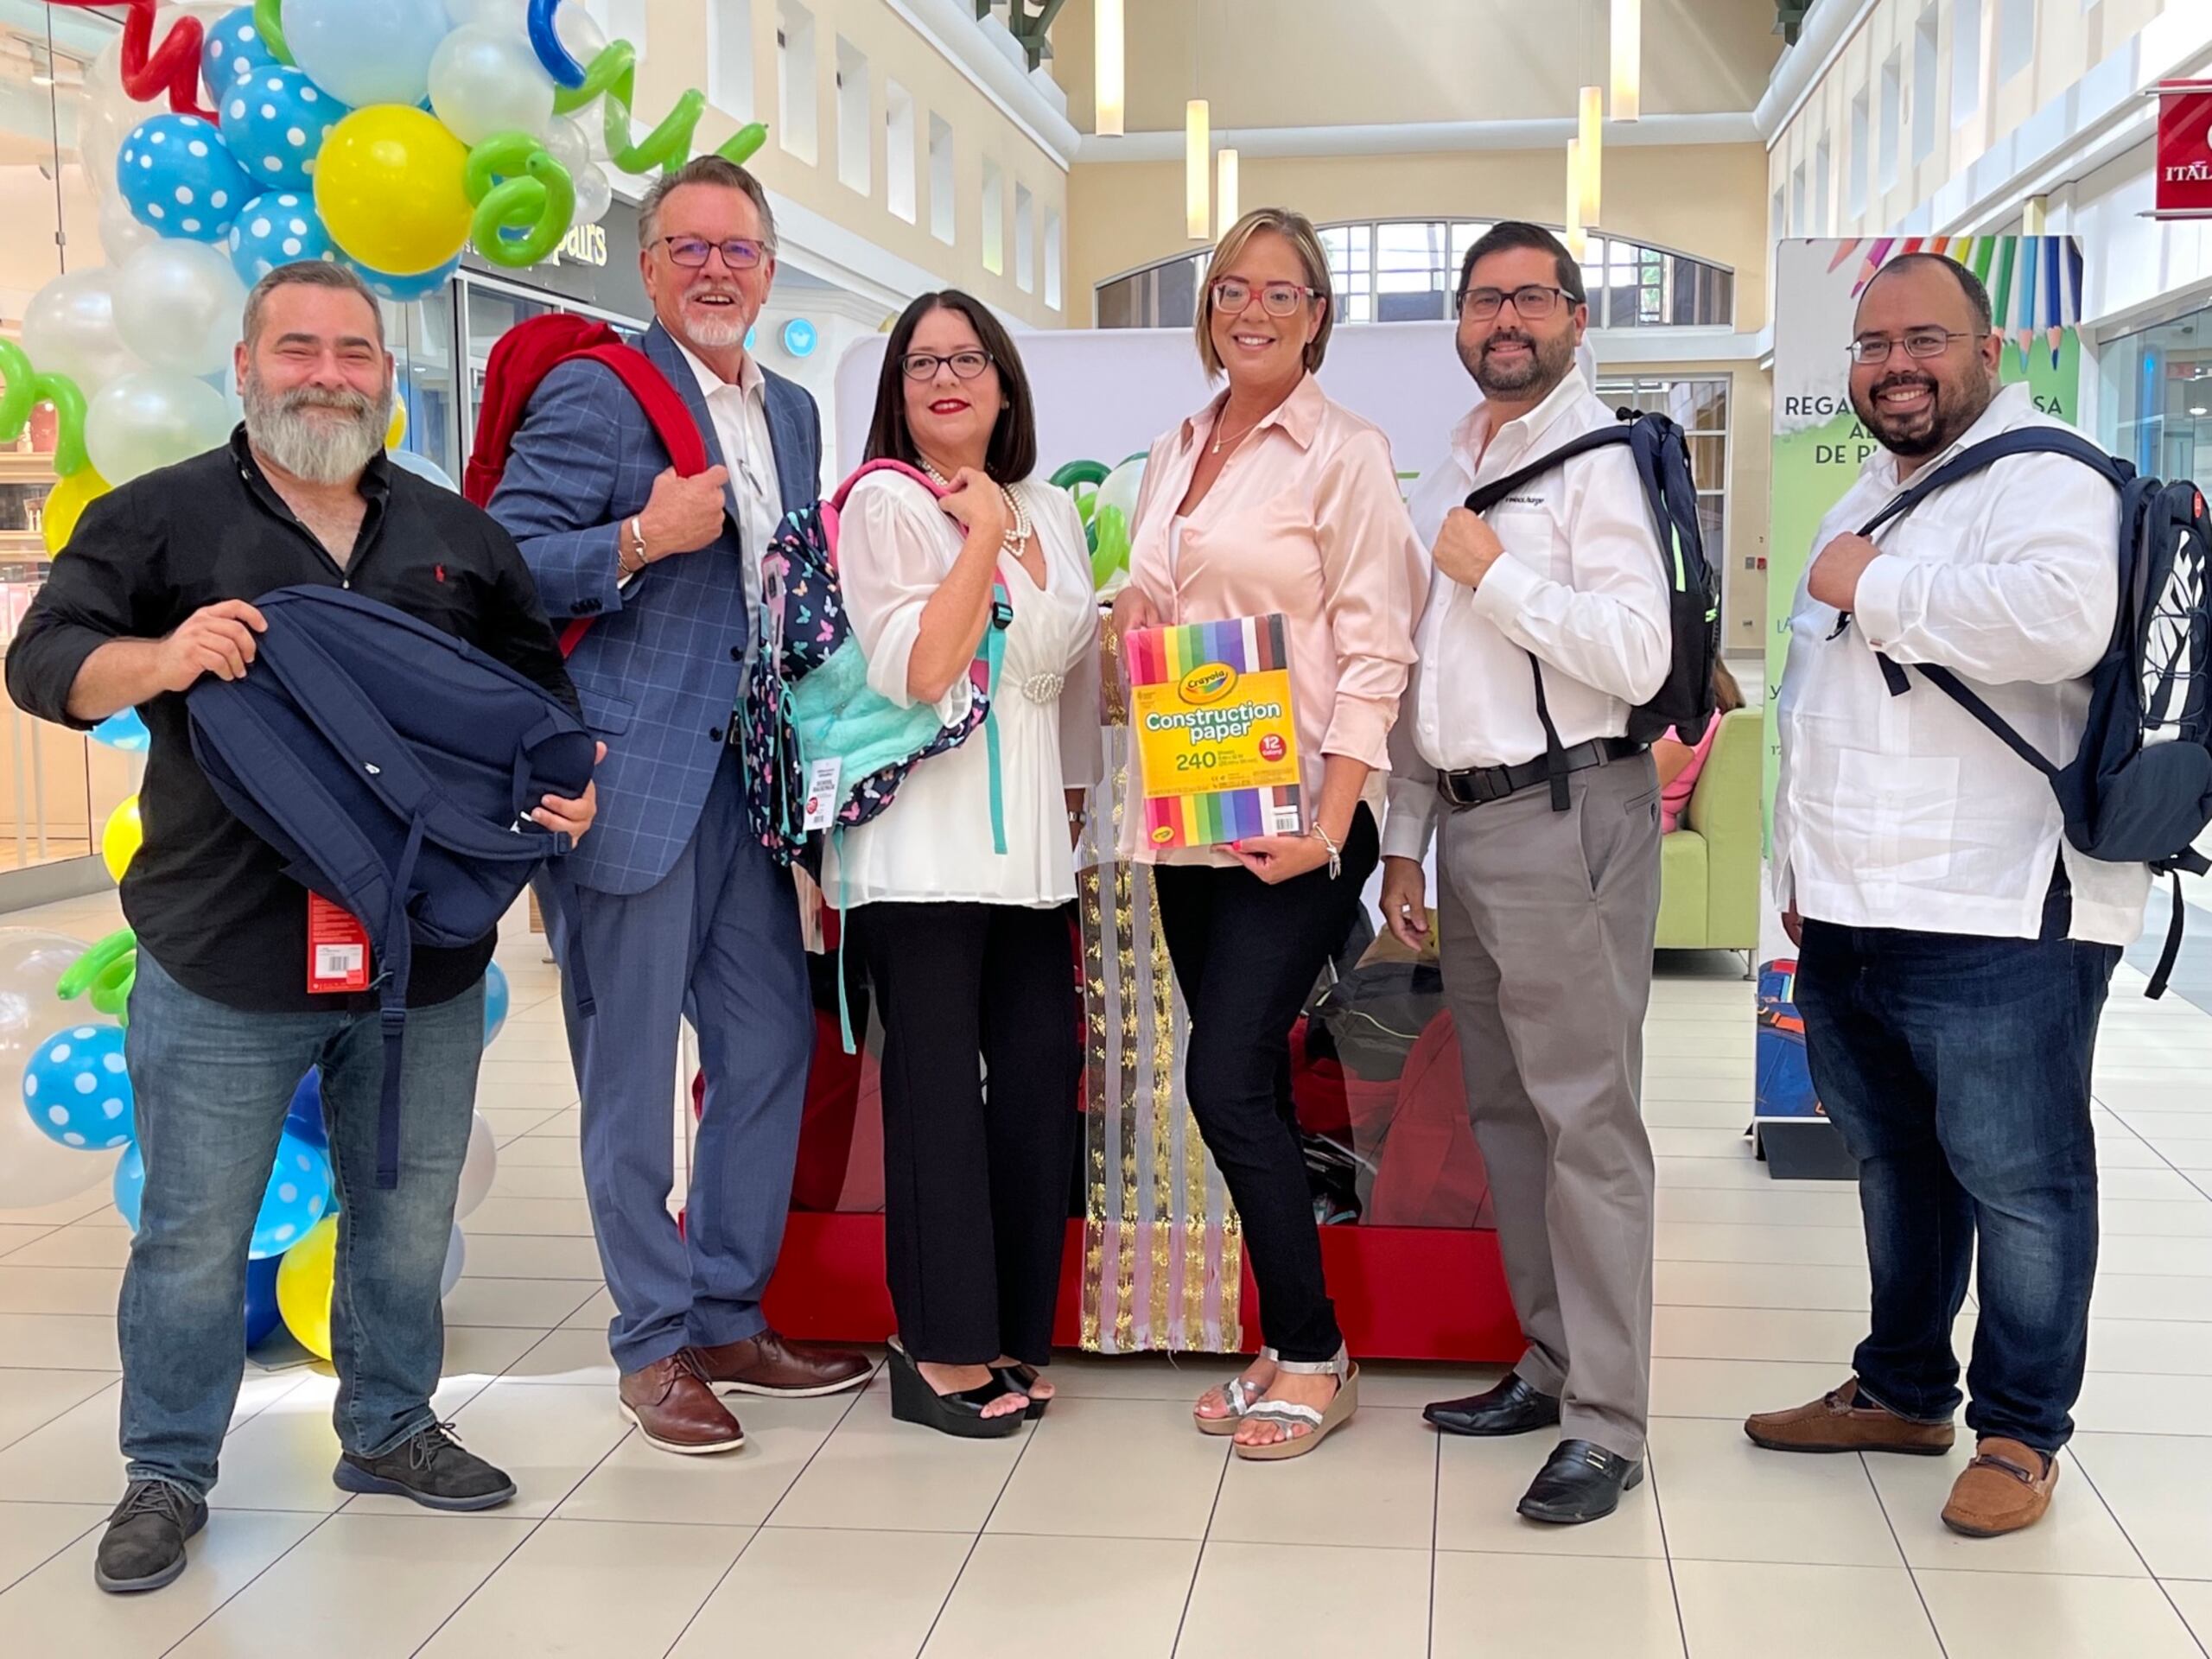 La iniciativa “Regala una Sonrisa al Futuro de Puerto Rico” cuenta con la colaboración del Departamento de Educación.